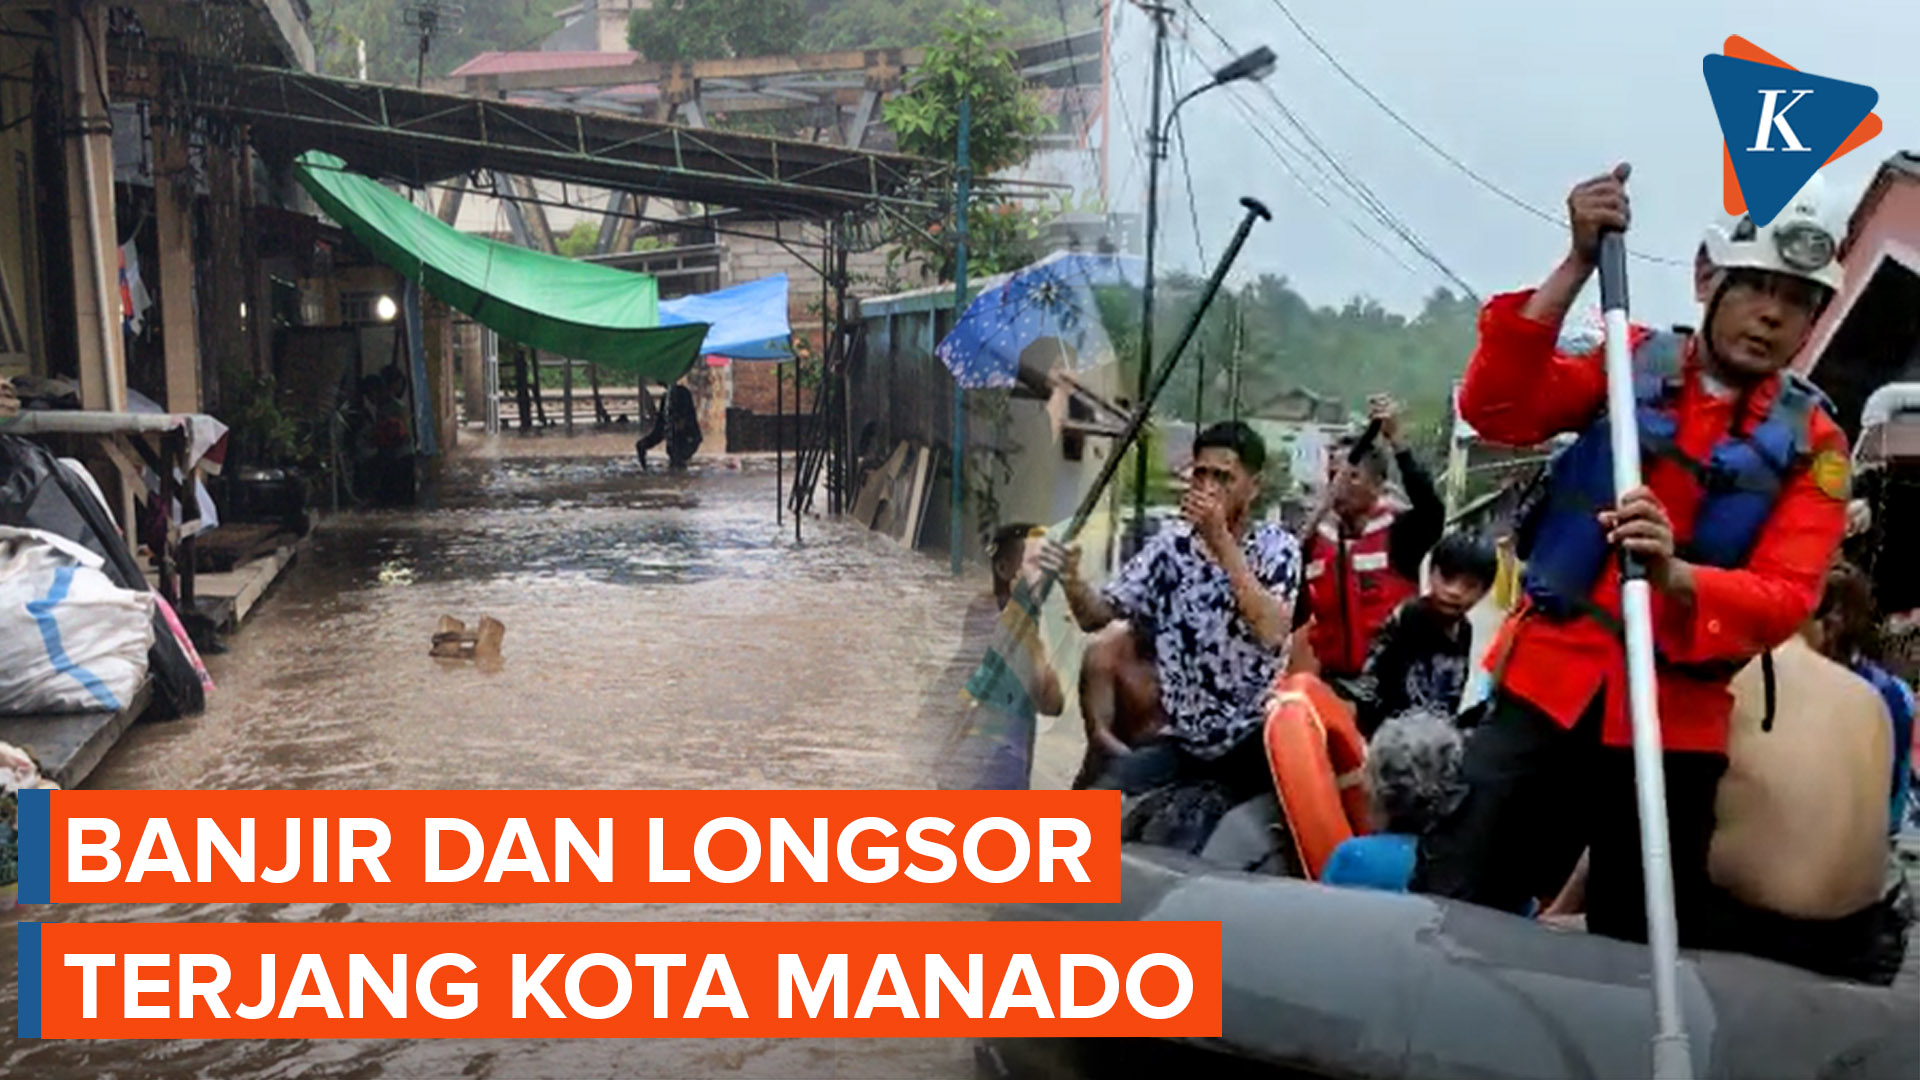 Banjir dan Longsor di Kota Manado, 1 Warga Meninggal